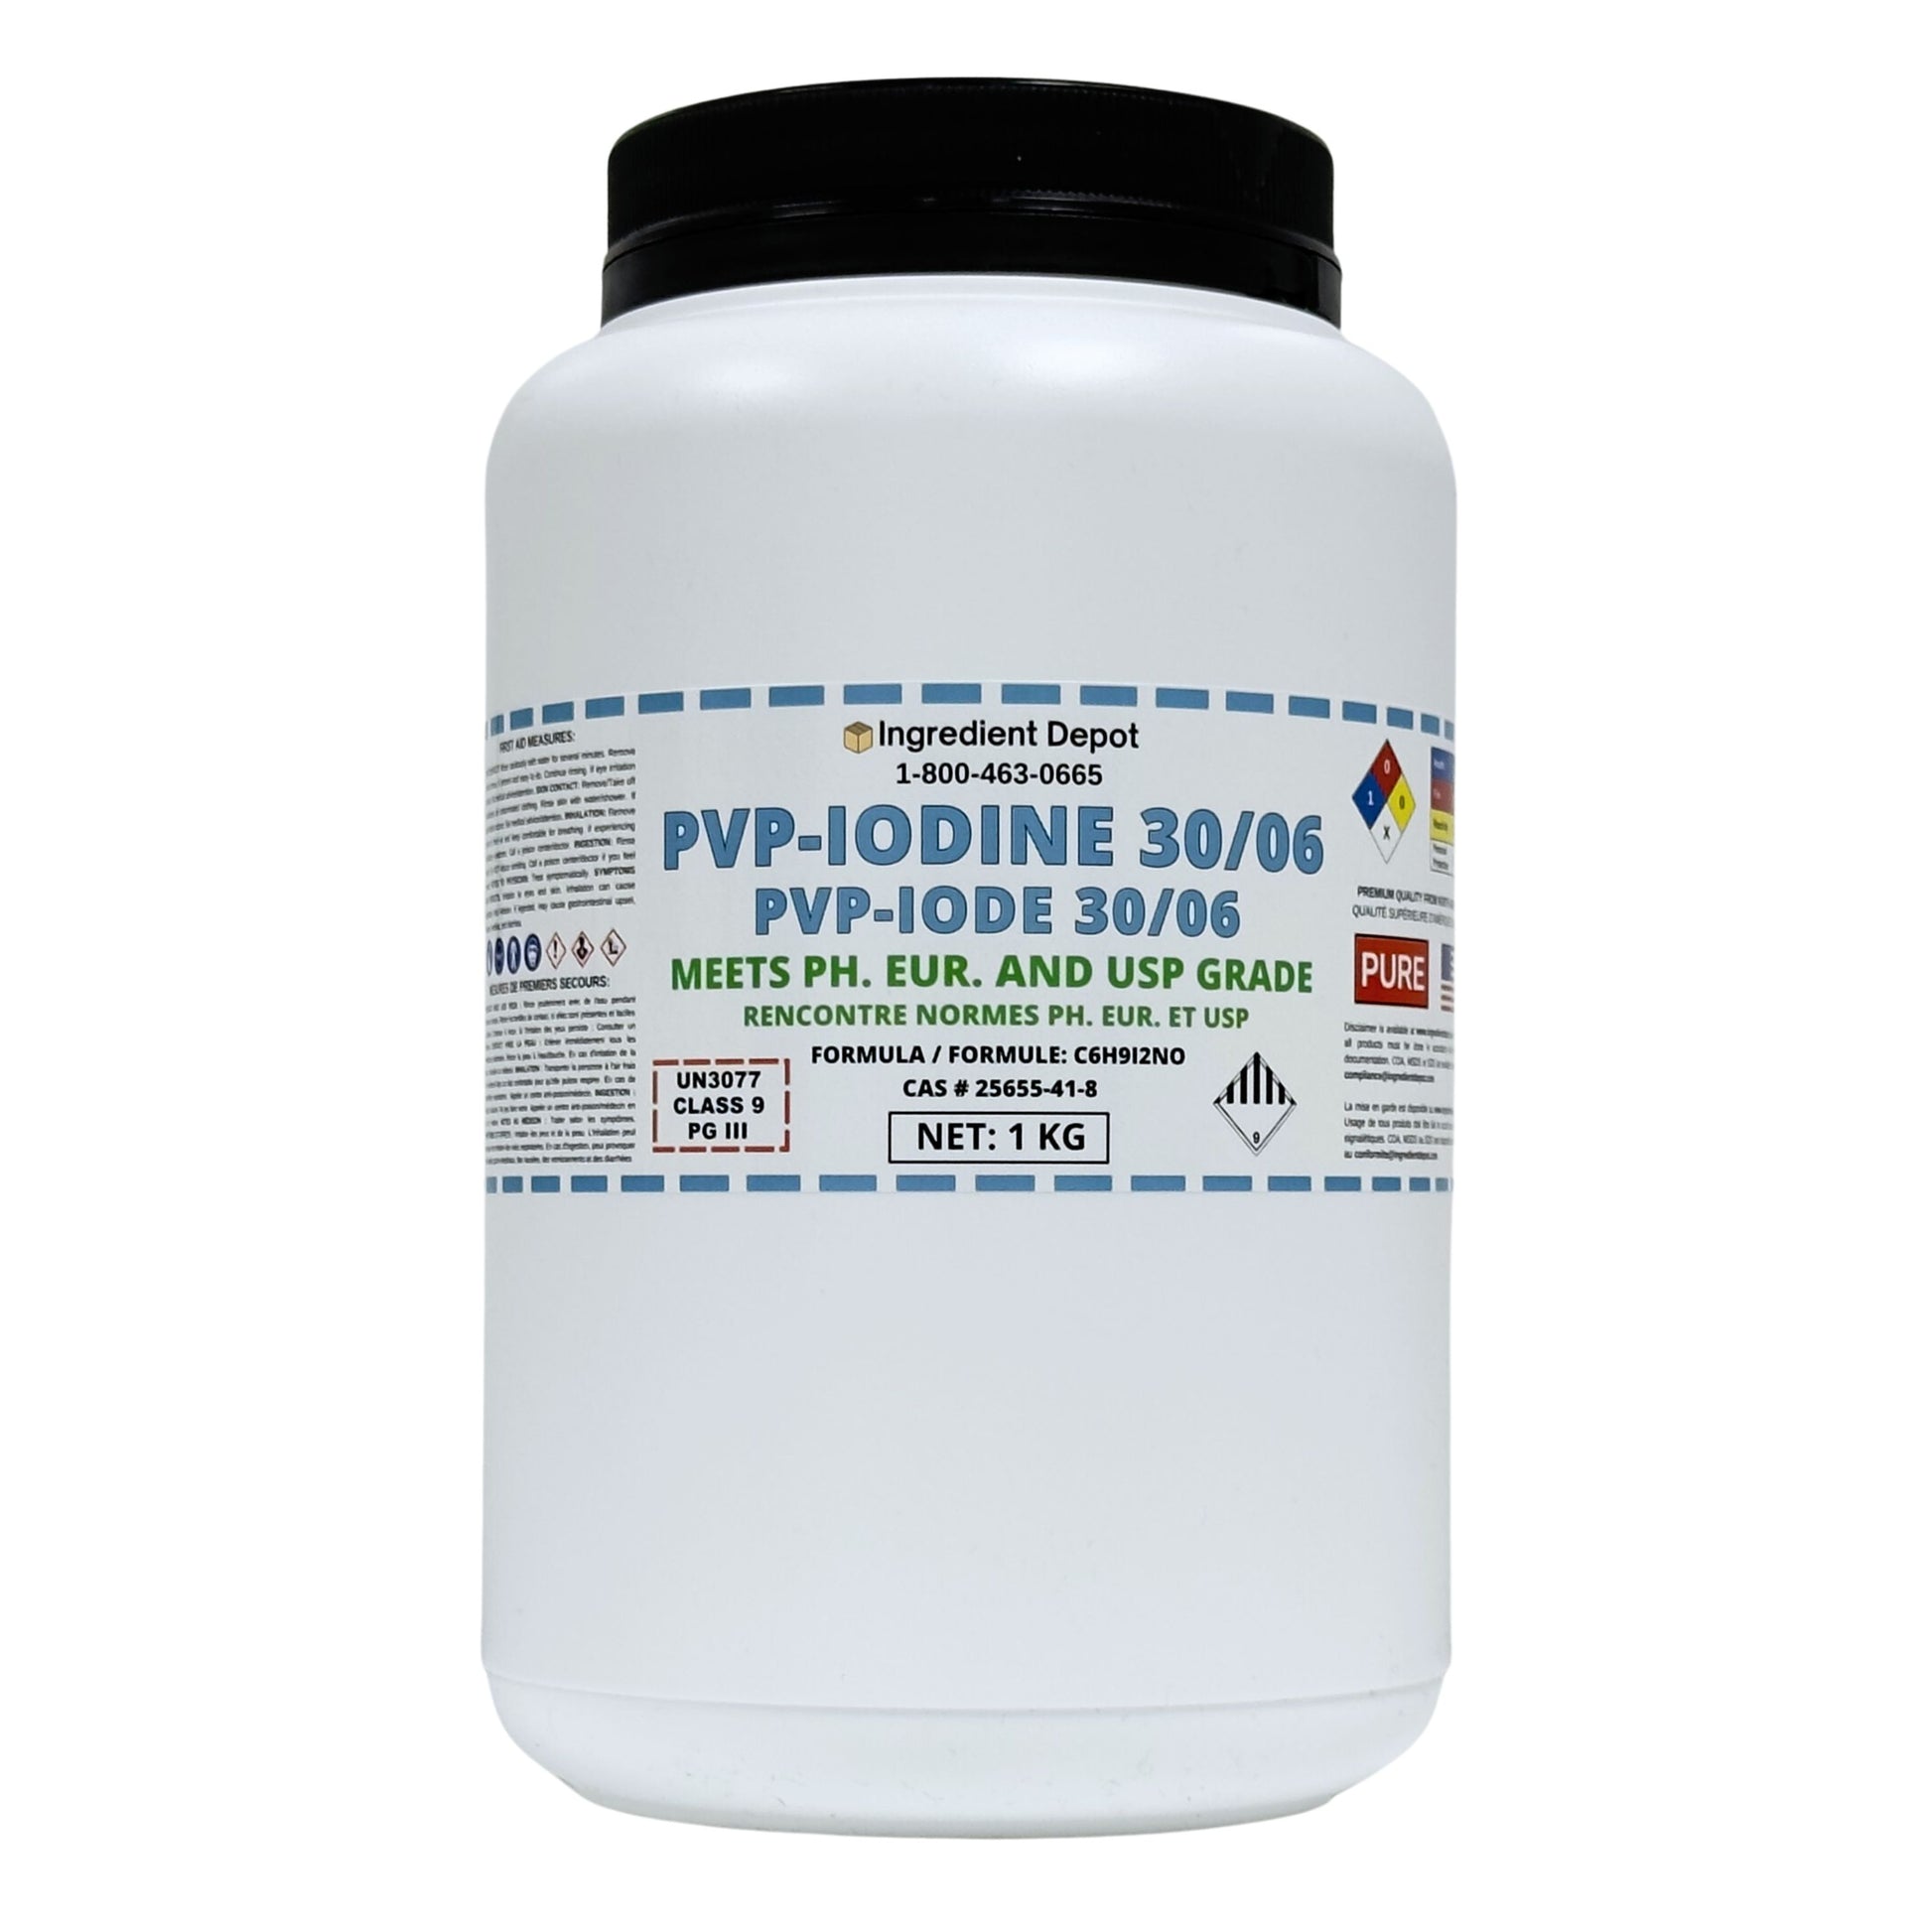 PVP-Iodine 30/06 (PVP-I, Povidone-Iodine) 1 kg - IngredientDepot.com